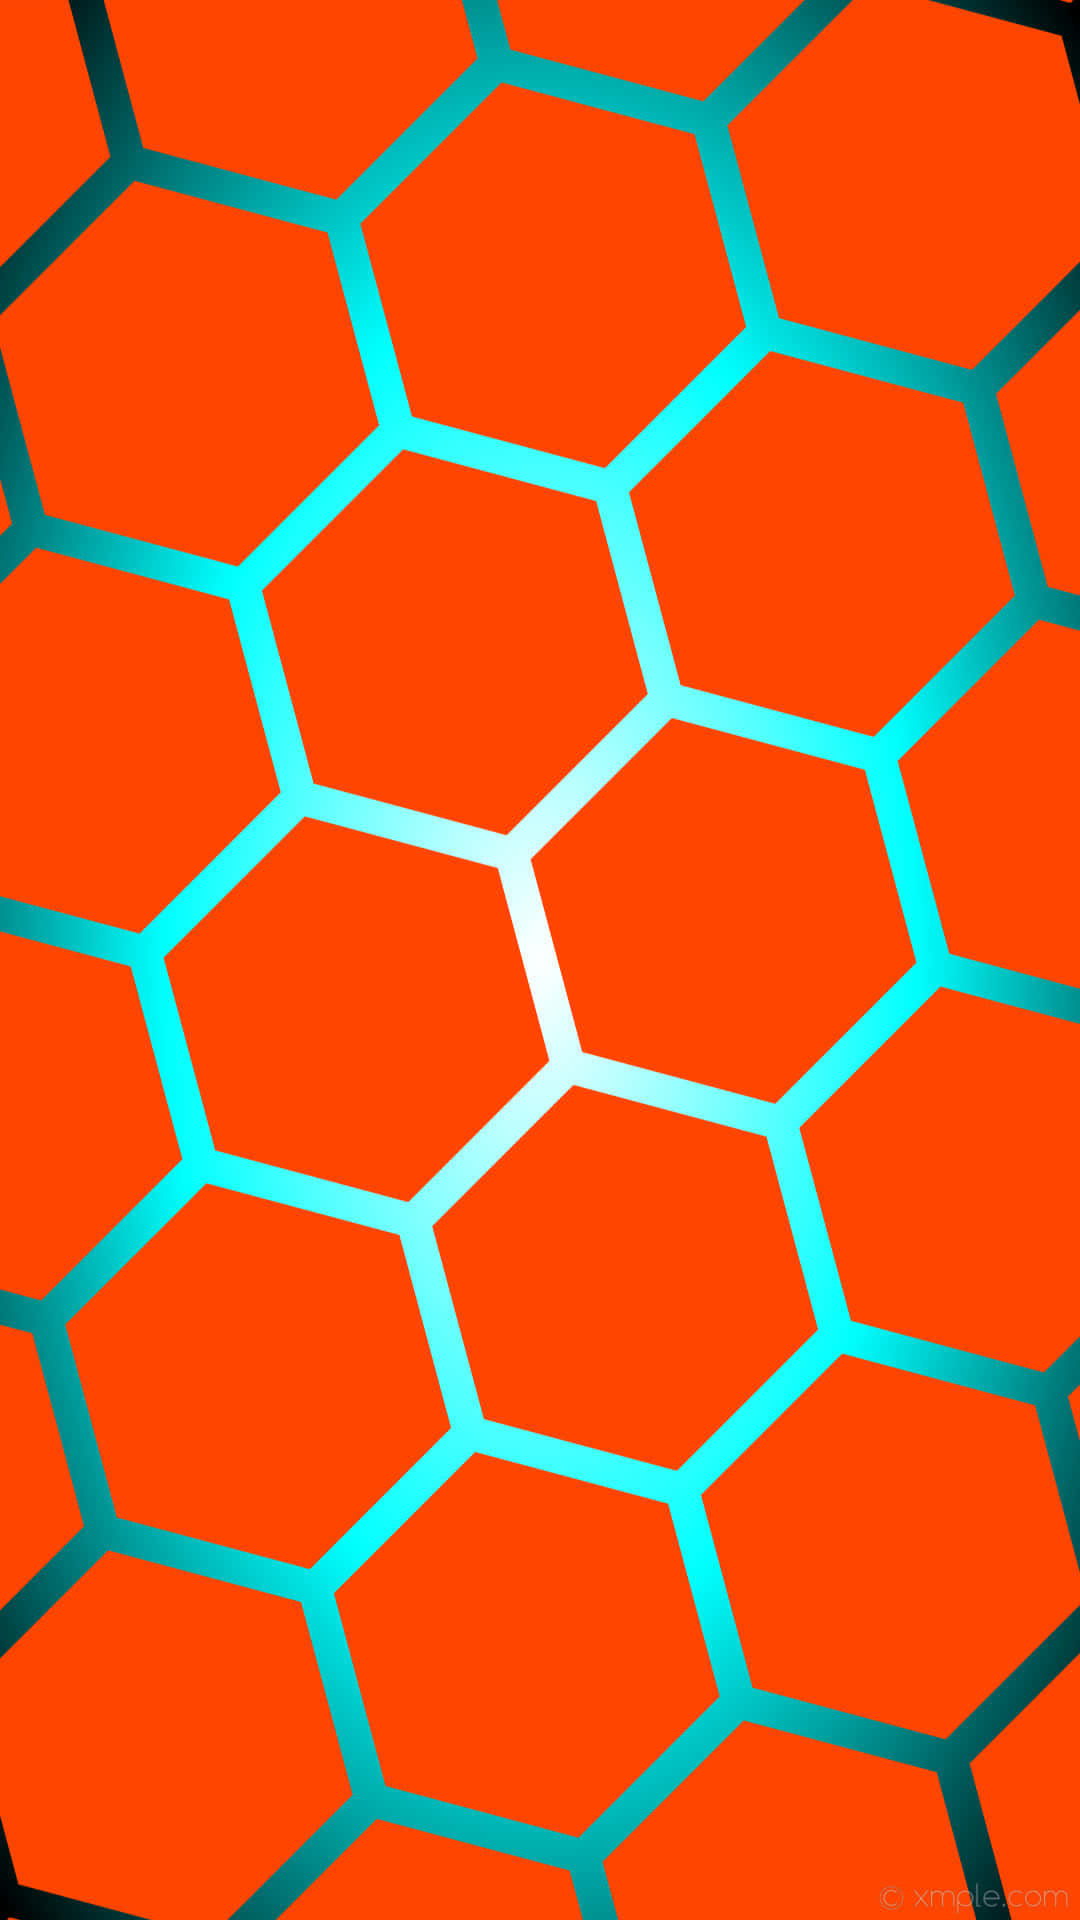 En levende orange og blå farveskala af geometriske figurer i et moderne opsætning. Wallpaper